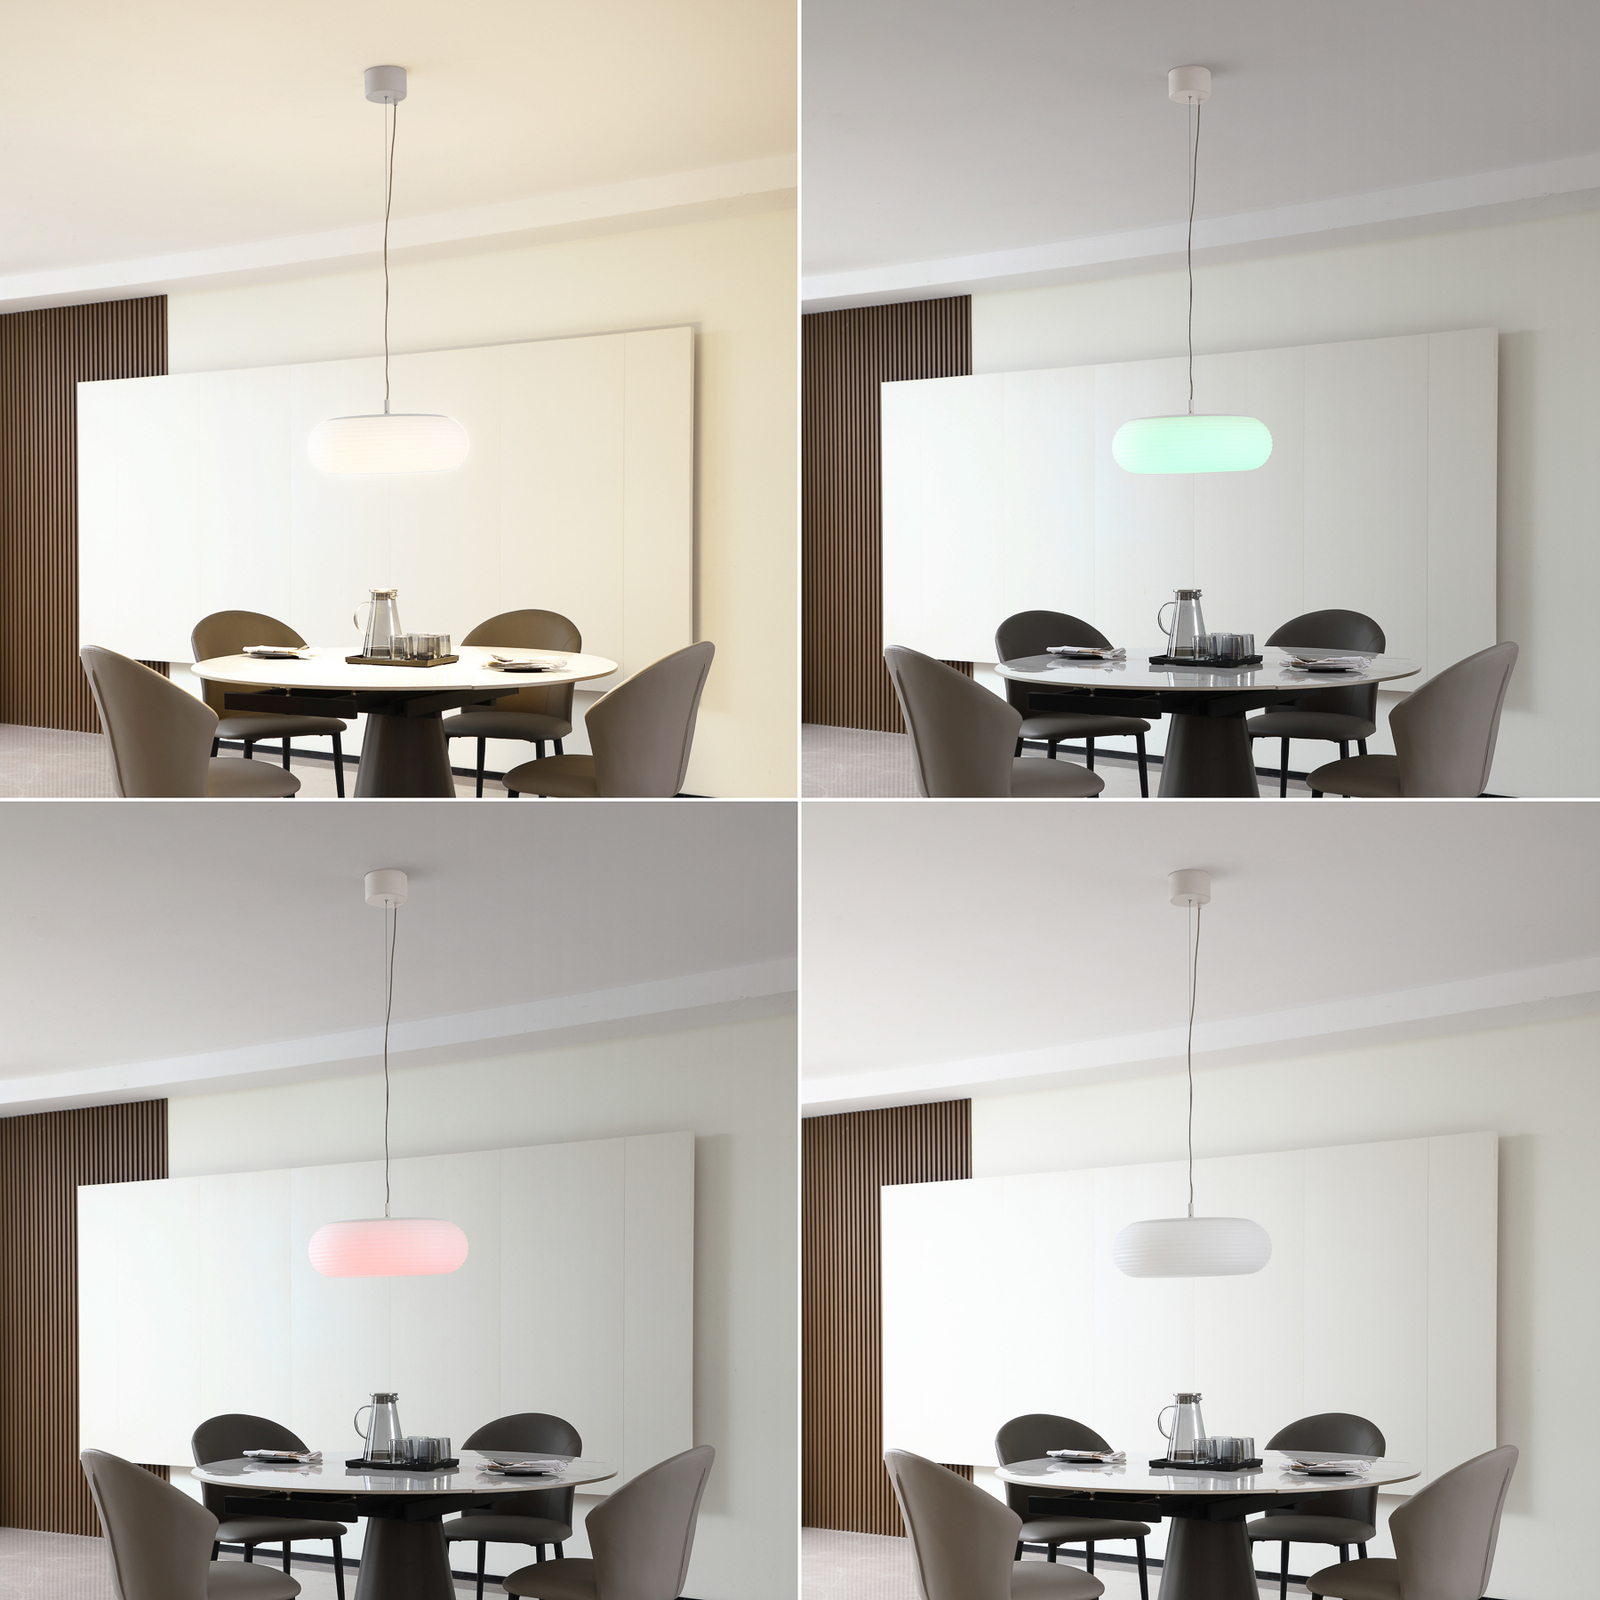 Lucande Smart LED-riippuvalaisin Bolti, valkoinen, RGBW, CCT, Tuya